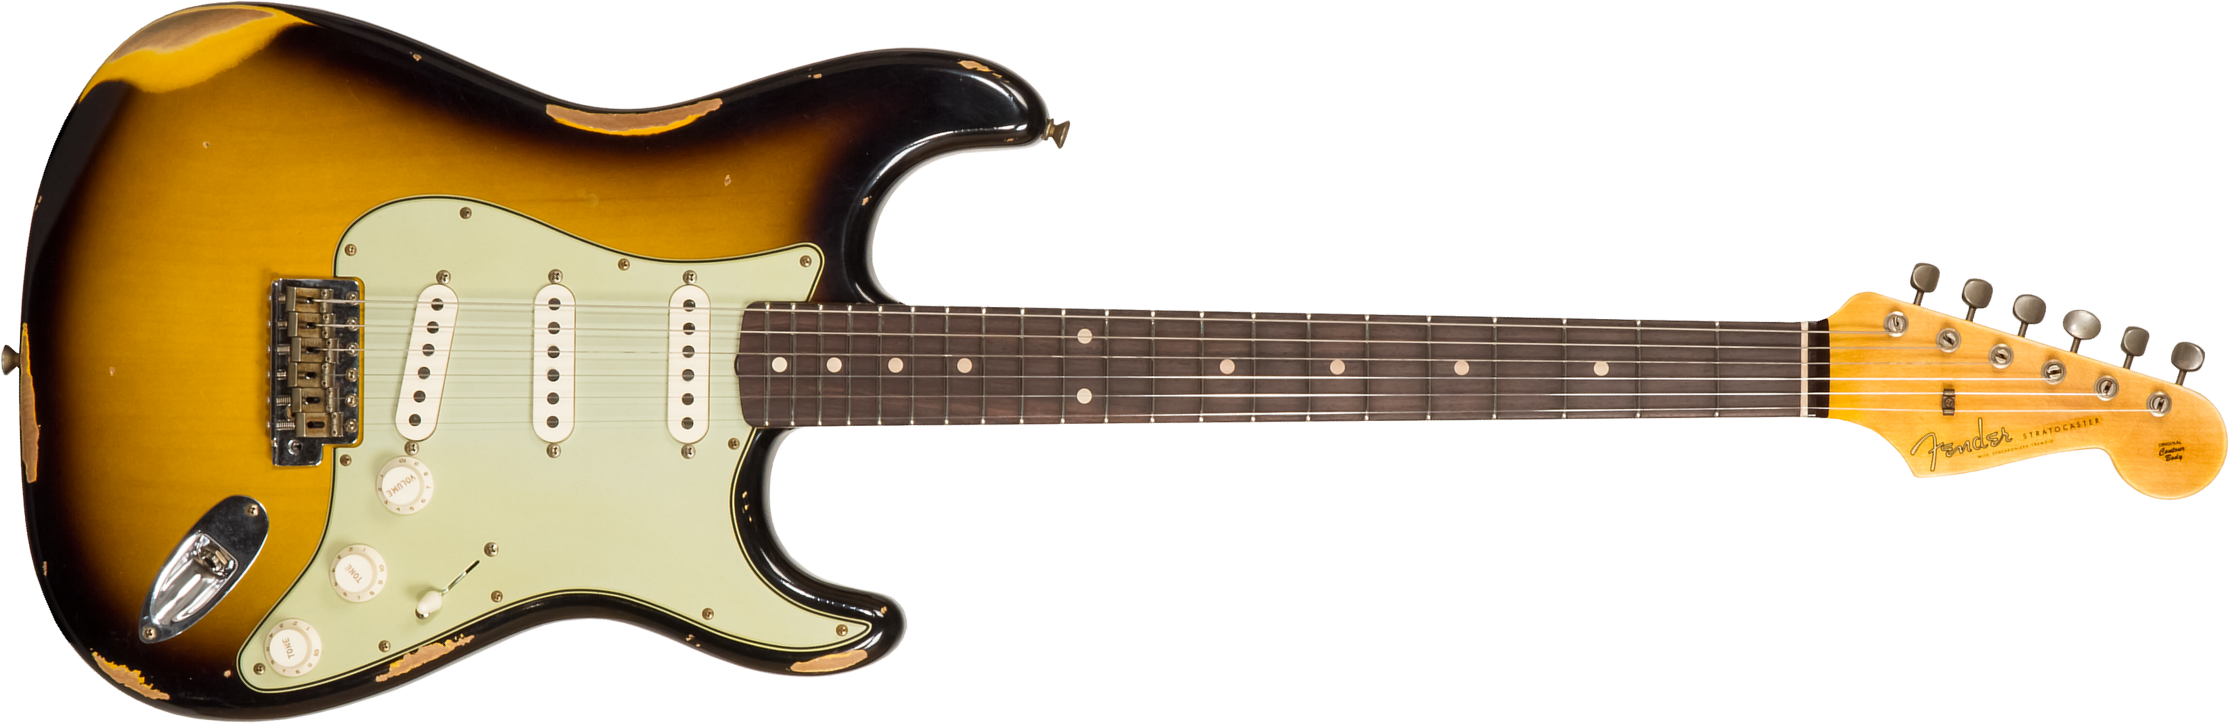 Fender Custom Shop Strat 1959 3s Trem Rw #r117661 - Relic 2-color Sunburst - Guitare Électrique Forme Str - Main picture